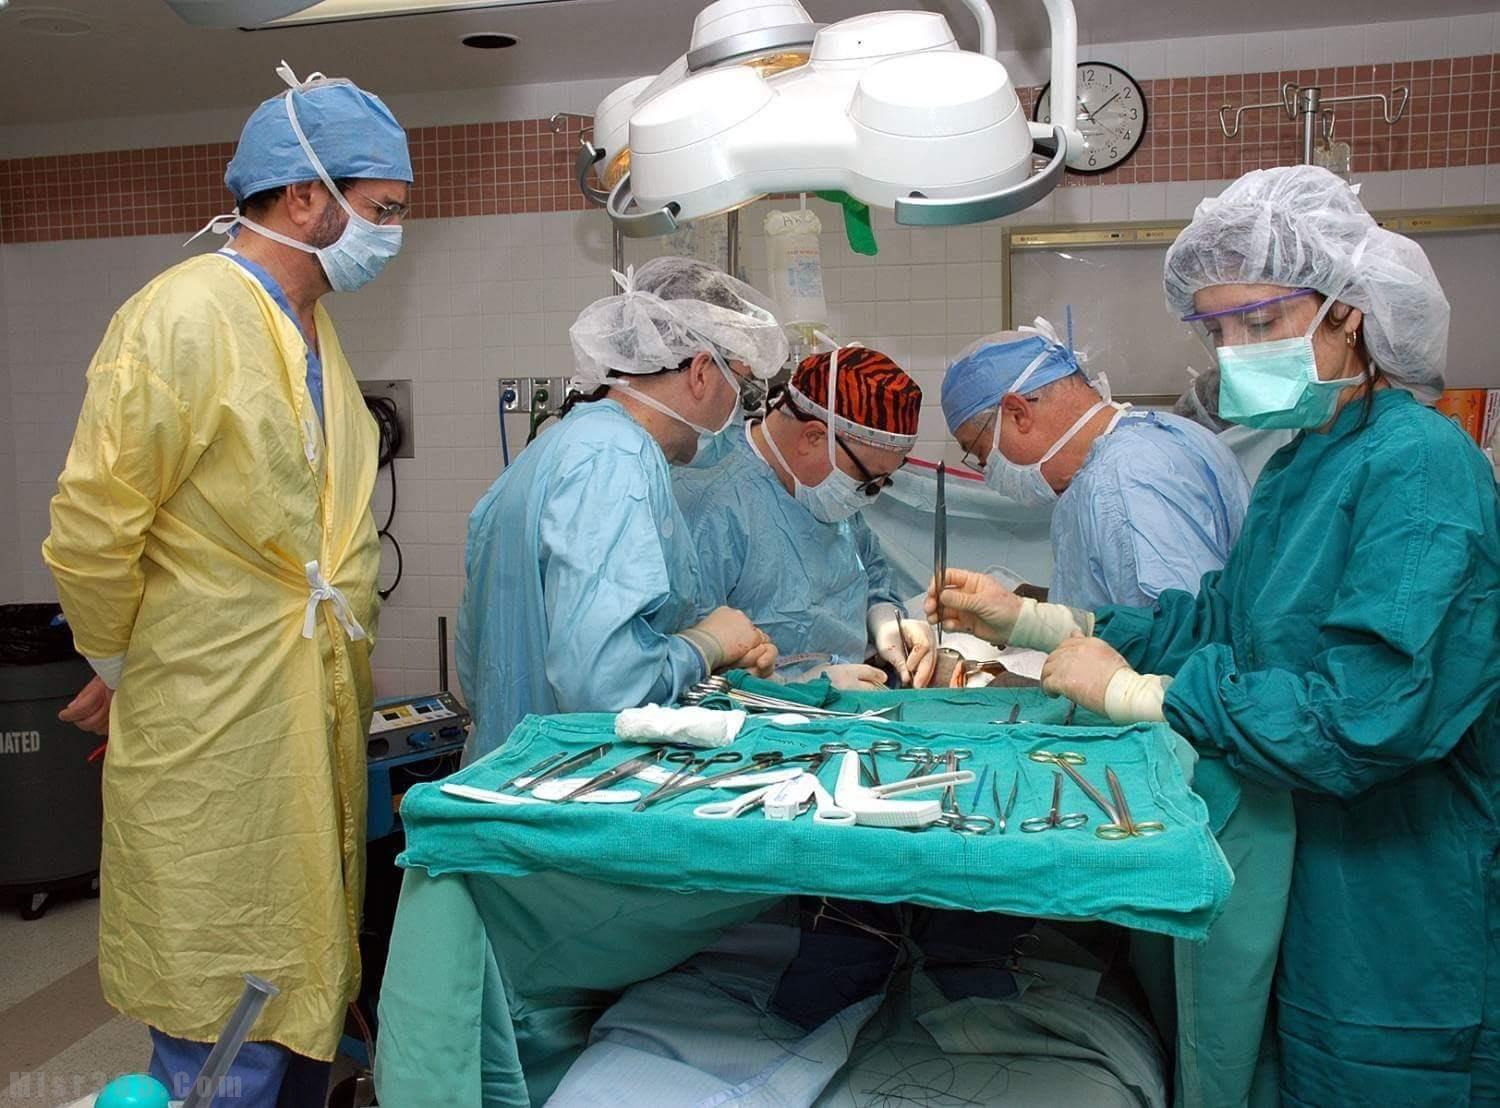  عاجل : أطباء أم نخاسون .. القبض على شبكة للاتجار بـالأعضاء البشرية أثناء إجراء جراحة استئصال كلى وجزء من كبد